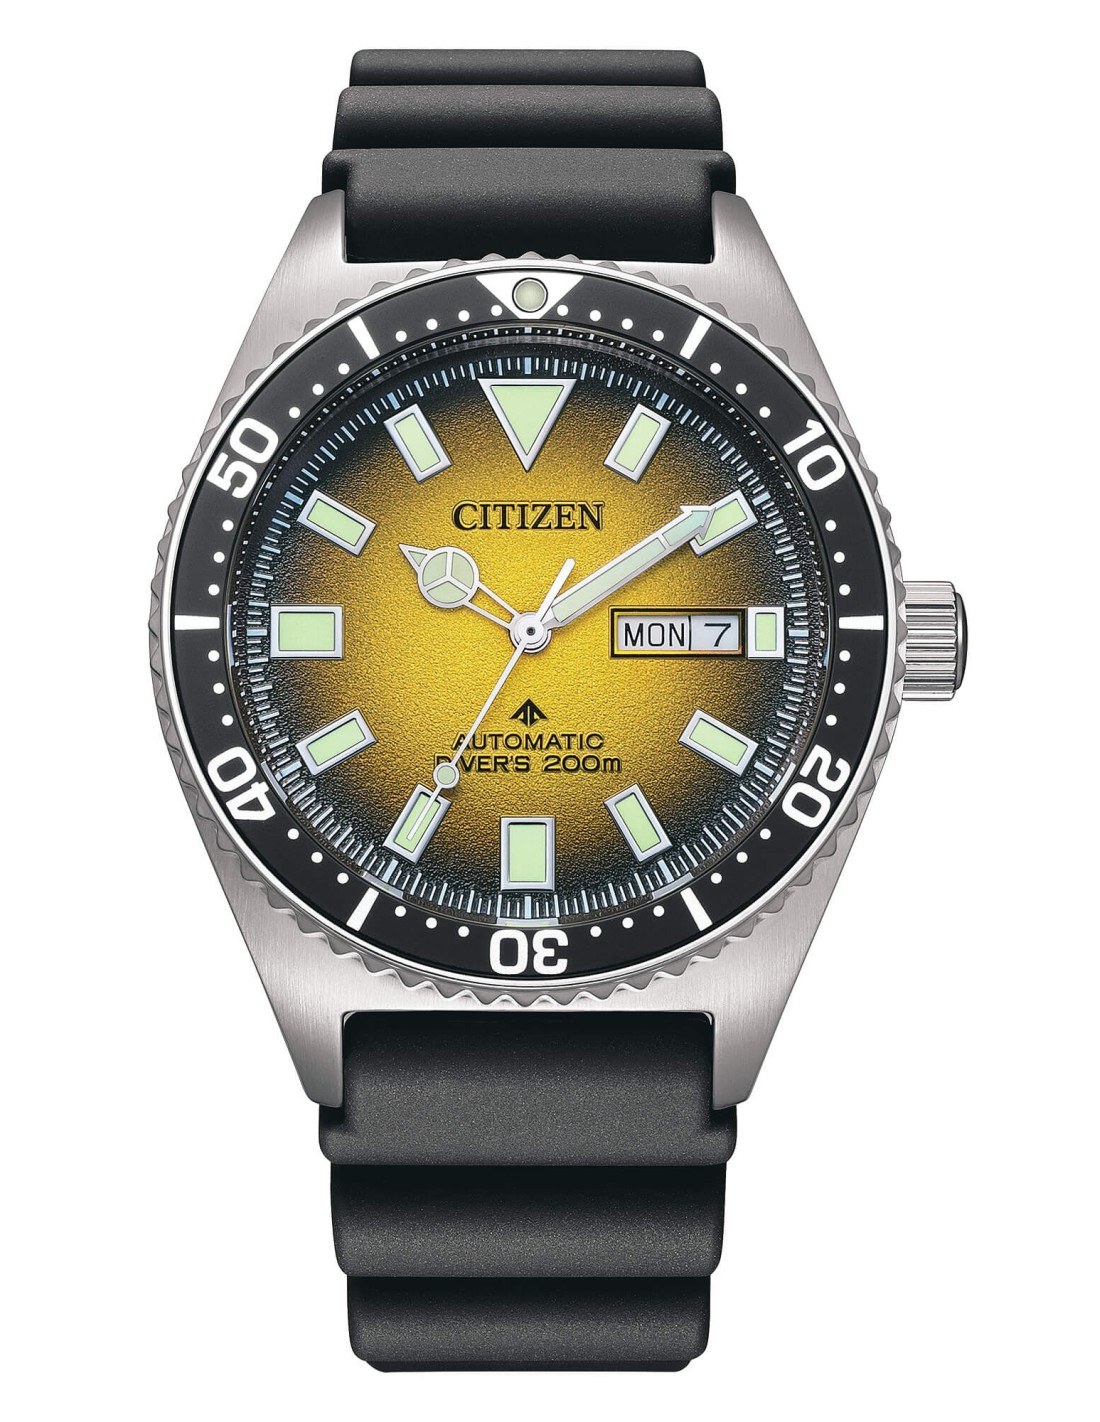 Orologio citizen promaster automatic diver s ny0120 01x